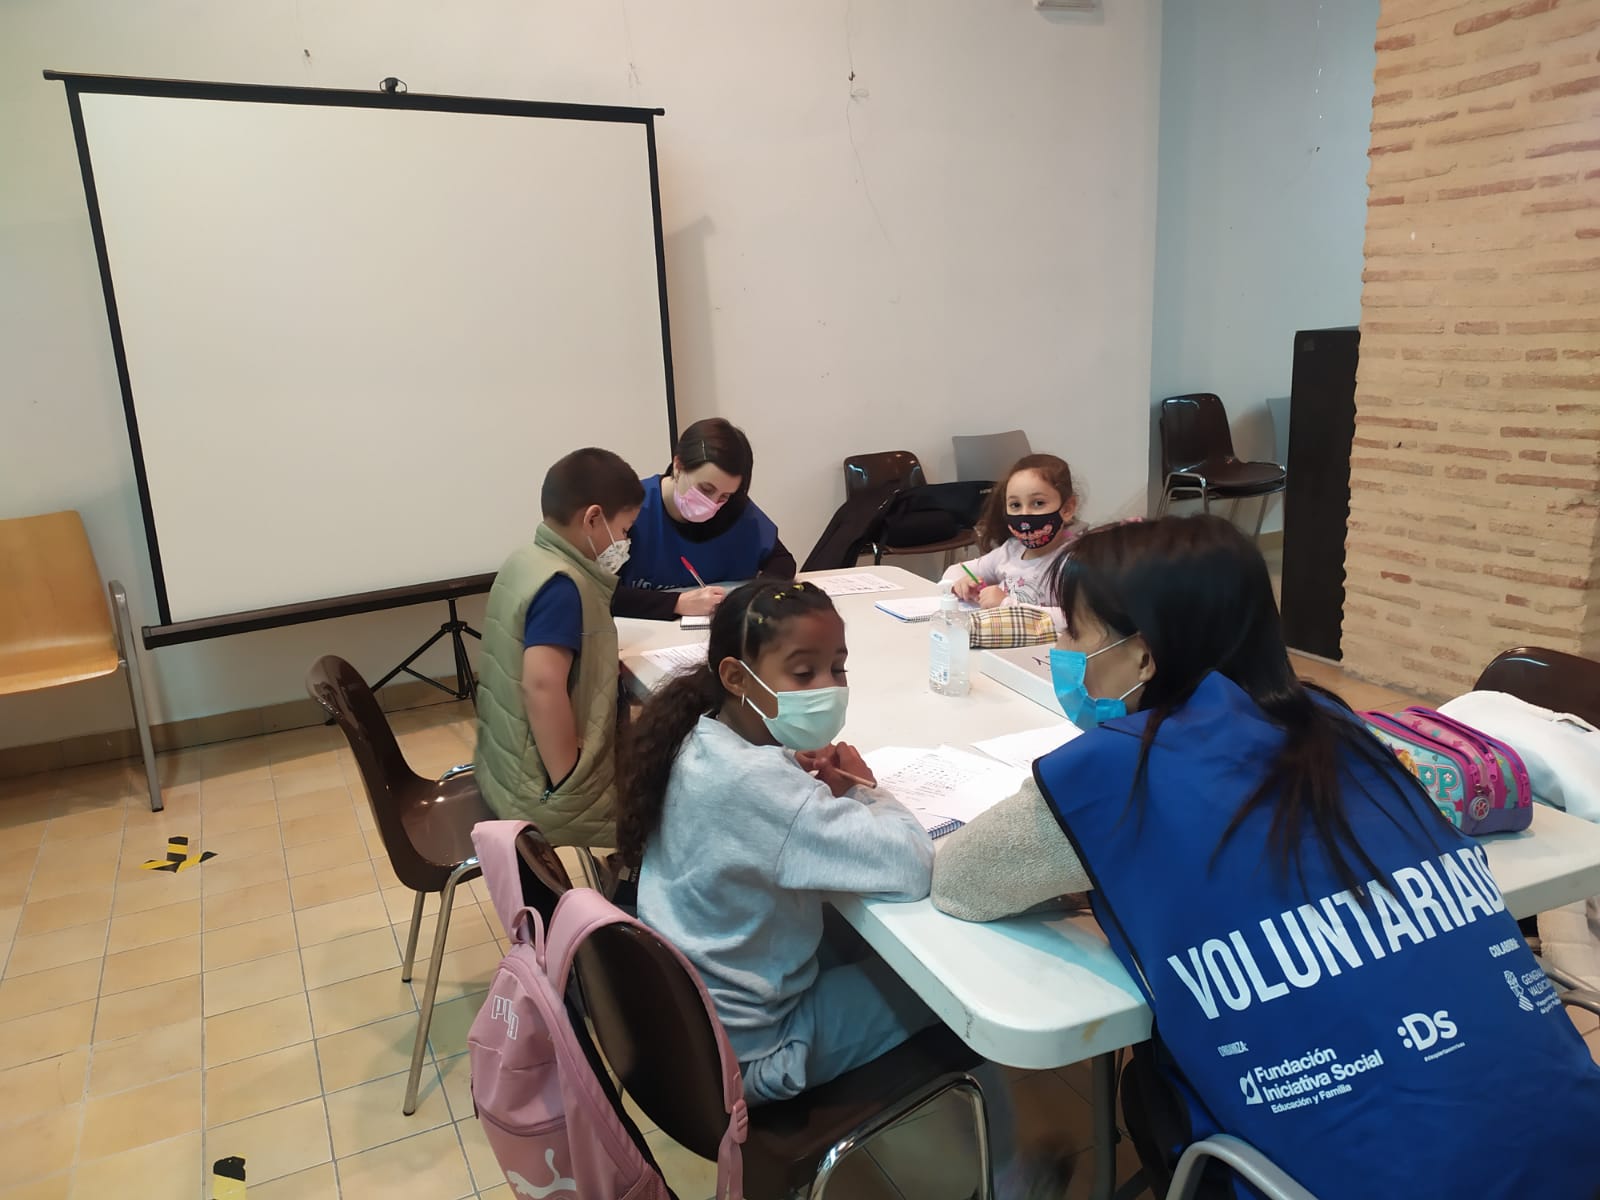 Se firma un nuevo convenio de voluntariado con la Fundación Iniciativa Social para colaborar en proyectos con menores en situación de riesgo